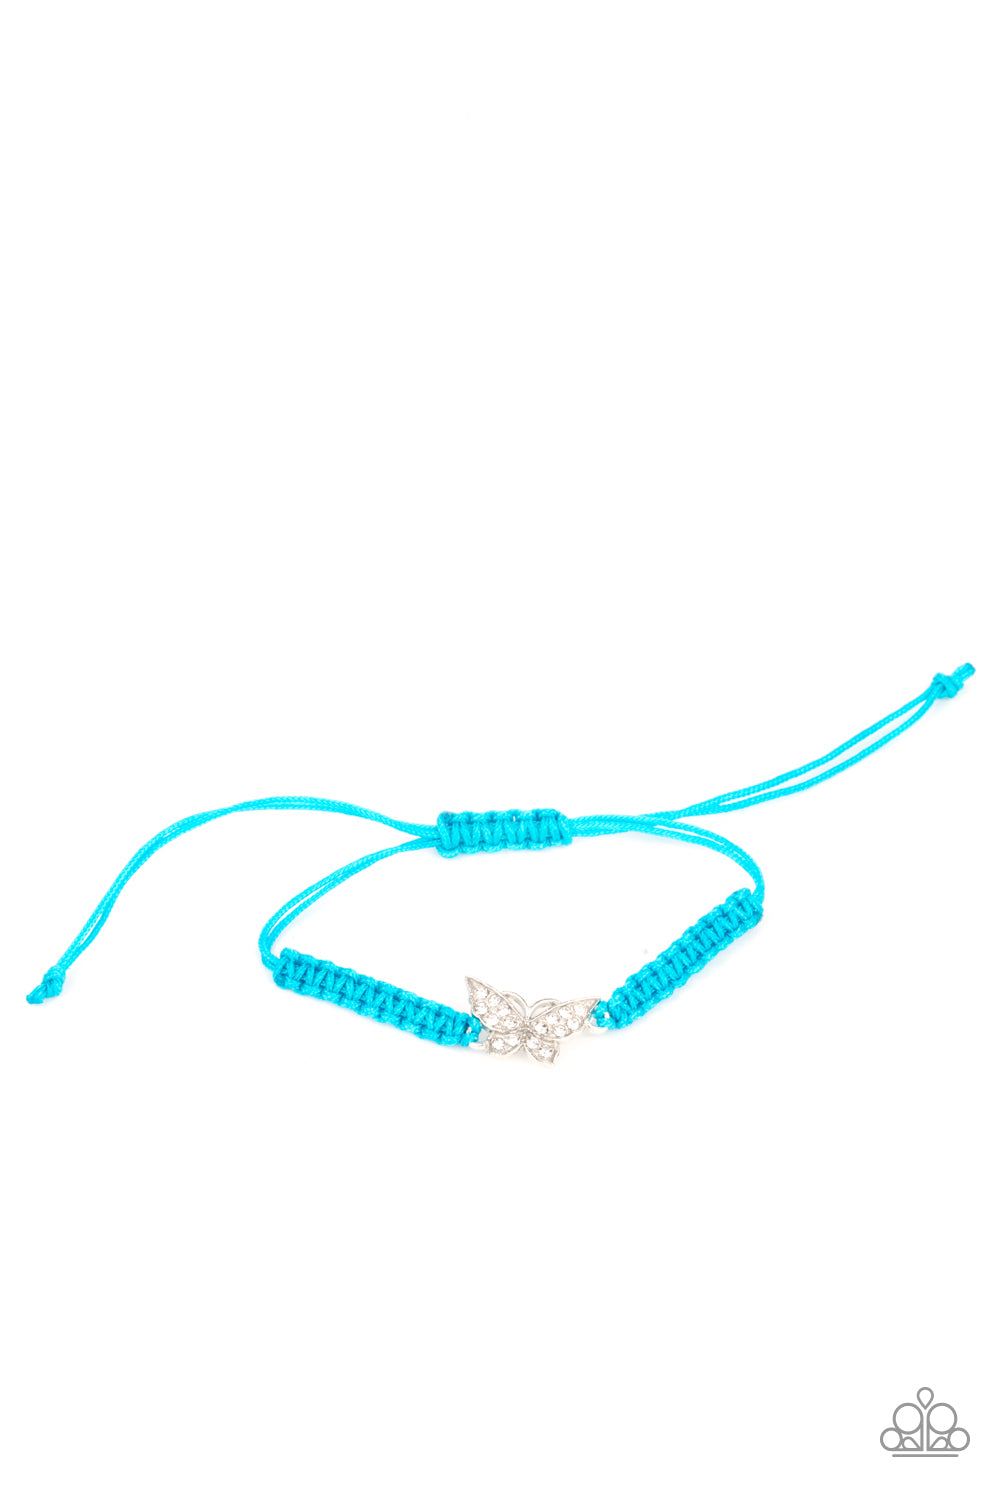 Pull a Bling Butterfly Children's Starlet Shimmer 5 Bracelet Bundle Set - Princess Glam Shop